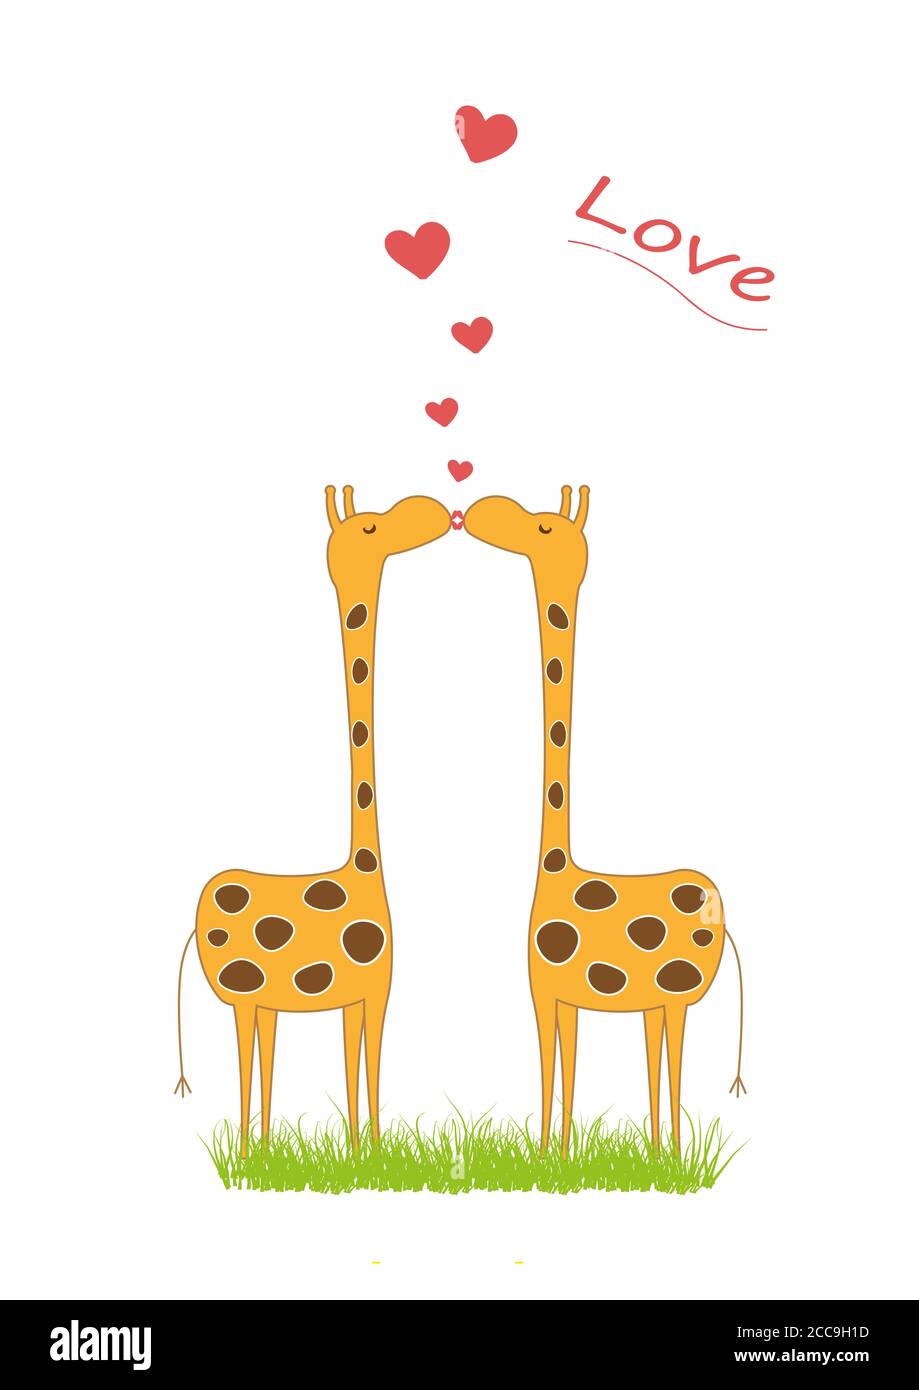 Illustrazione di giraffe bacianti isolate su uno sfondo bianco Foto Stock